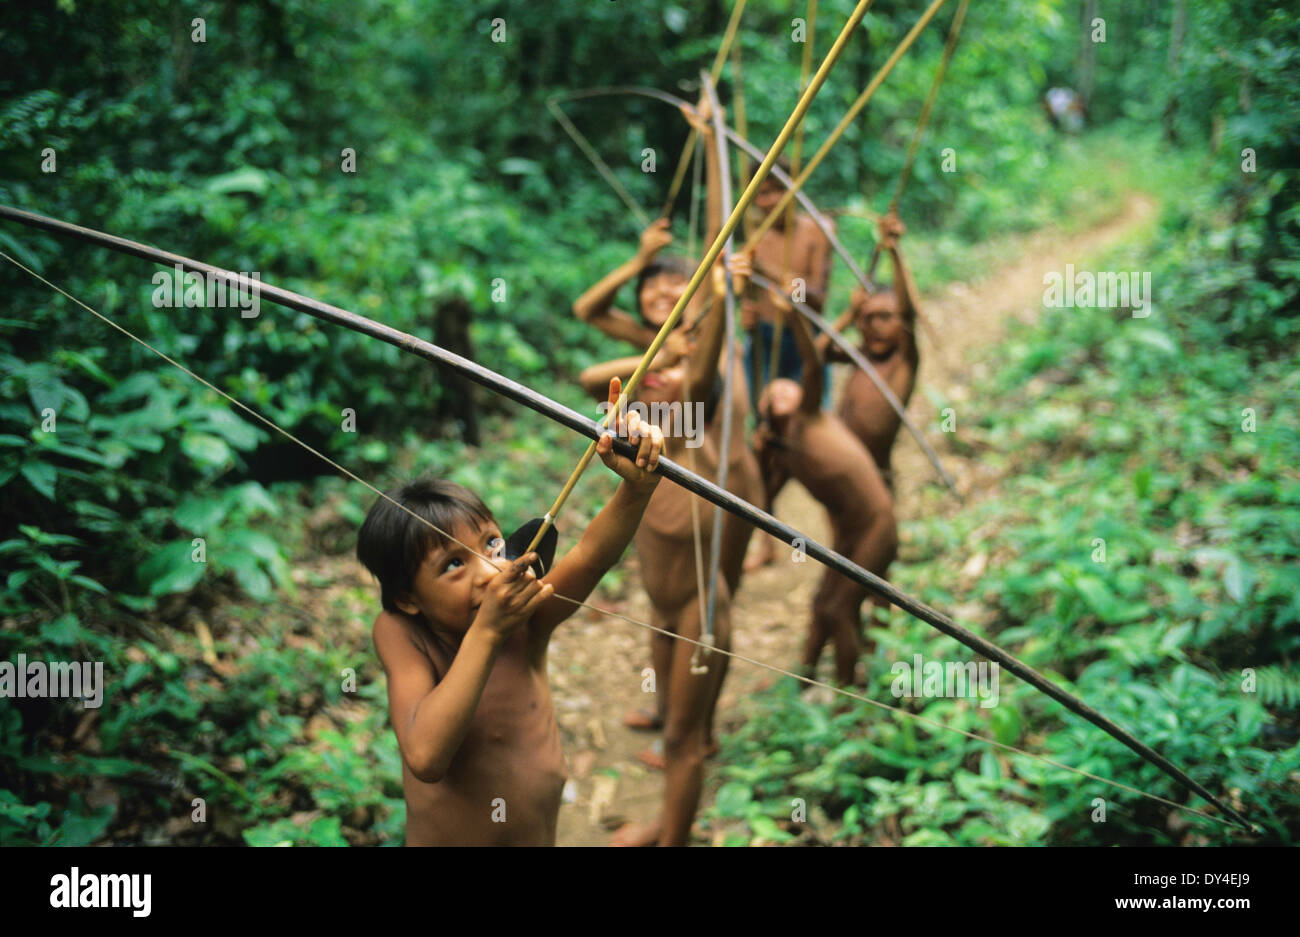 Les garçons Yanomami, les jeunes chasseurs d'arcs et de flèches, apprendre à chasser, tout en jouant dans la forêt tropicale. Amazonie, Brésil Banque D'Images